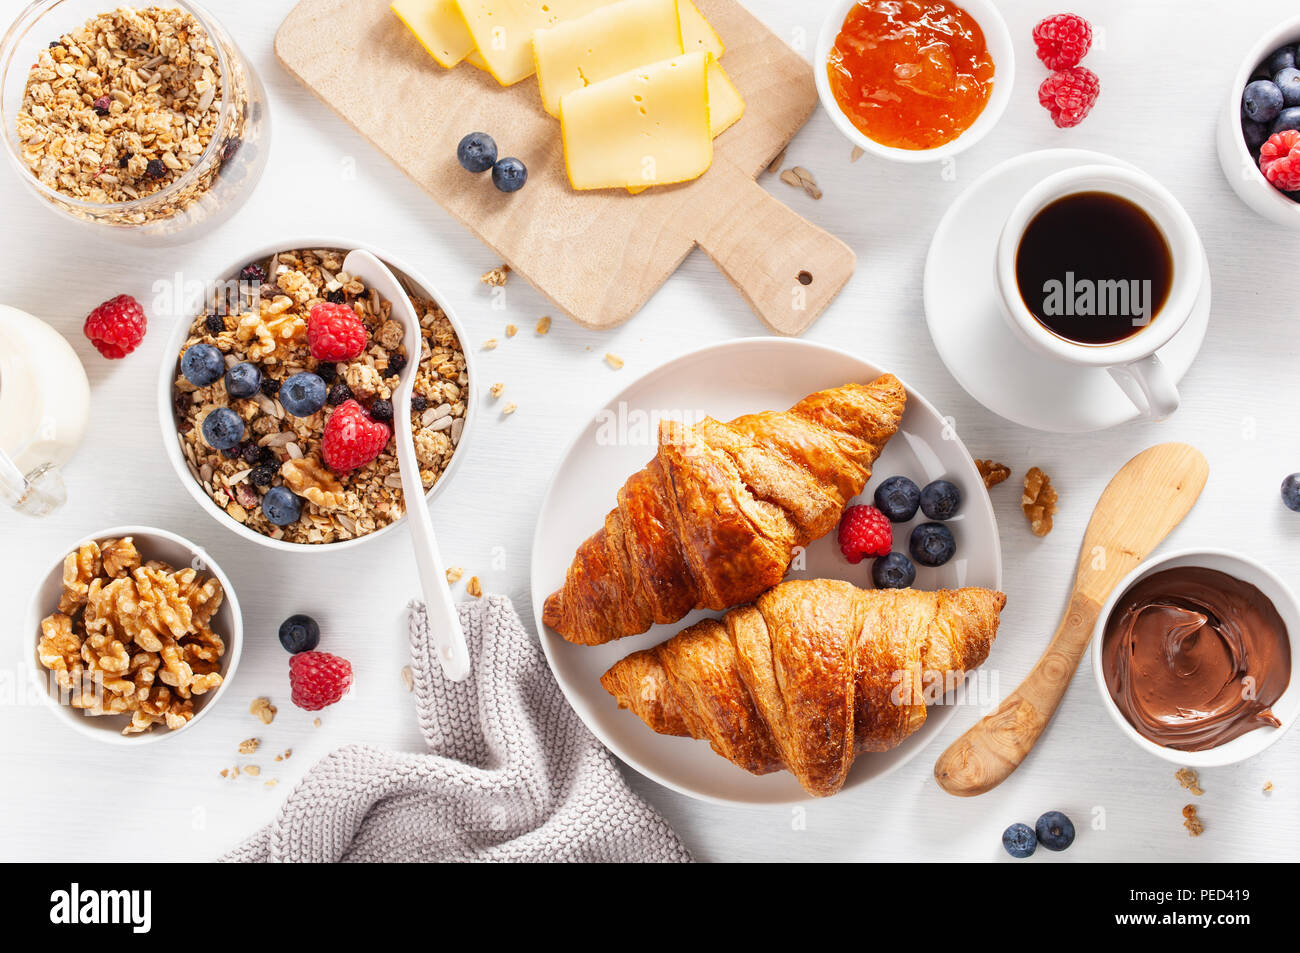 Gesundes Frühstück mit Müsli, Beeren, Nüsse, Croissant, Marmelade, Nutella und Kaffee. Ansicht von oben Stockfoto